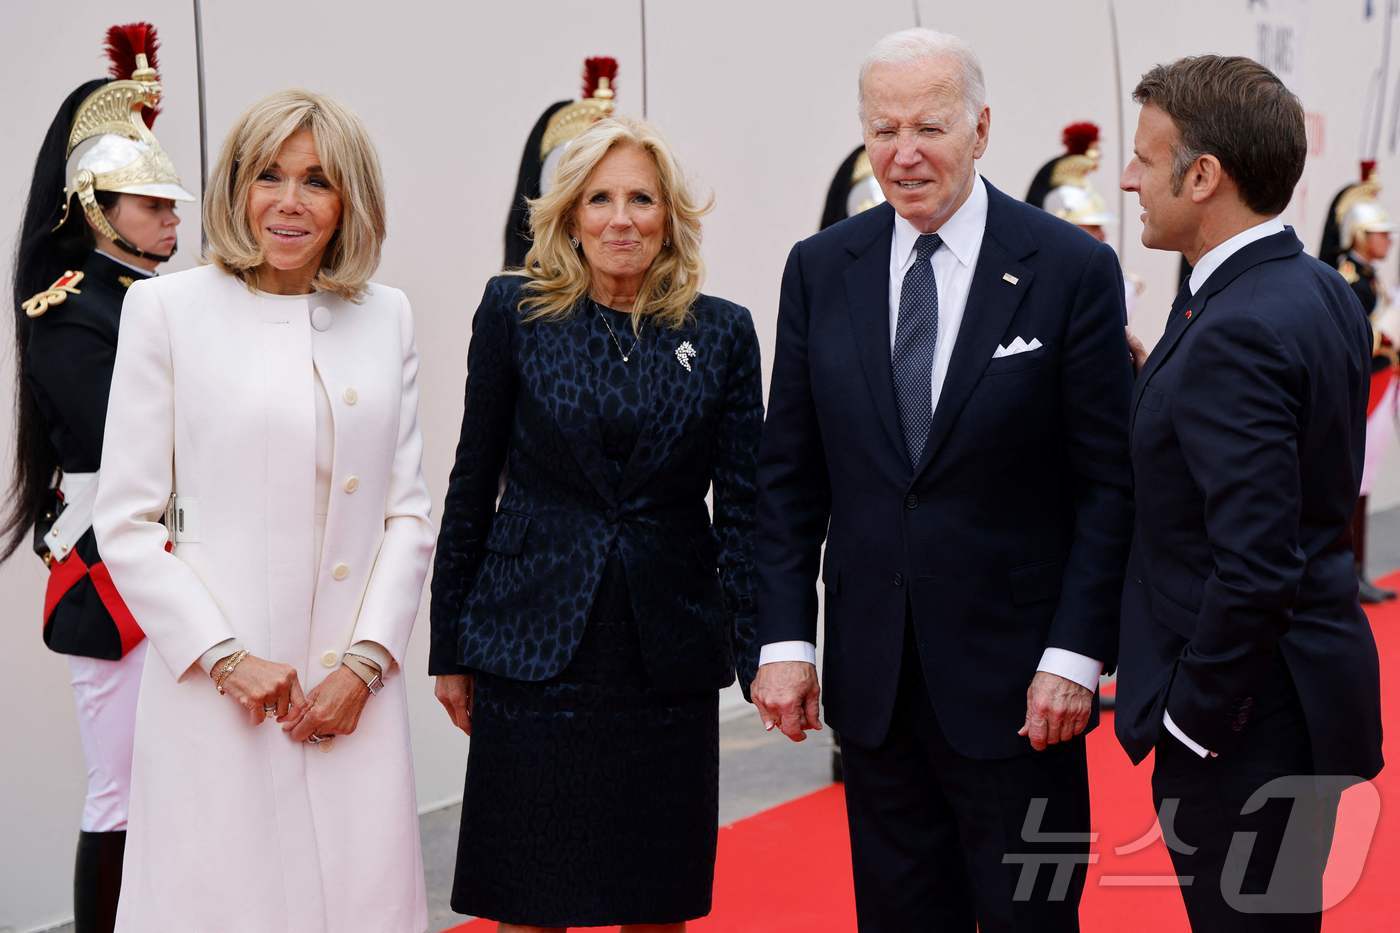 (생로랑 쉬르메르 AFP=뉴스1) 우동명 기자 = 조 바이든 미국 대통령과 부인 질 바이든 여사가 6일(현지시간) 프랑스 생로랑 쉬르메르의 오바마 해변에서 열린 노르망디 상륙작전 …